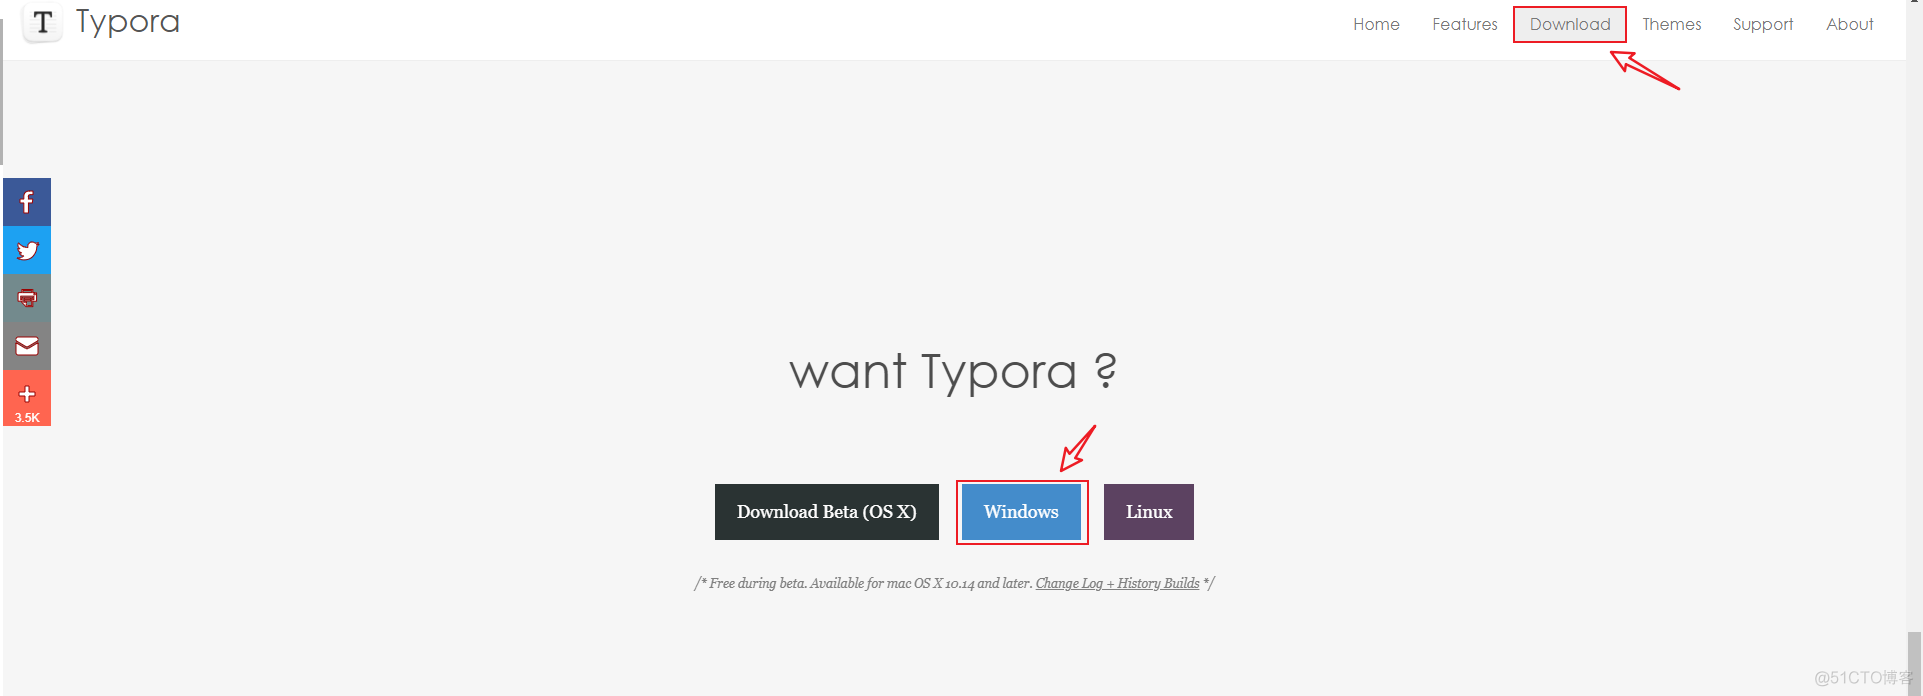 【超实用技巧】✨| 提高写文的质量 和 速率必学技能：❤️ Typora 图床配置 详细说明 ❤️ 【Windows版】_图床_02